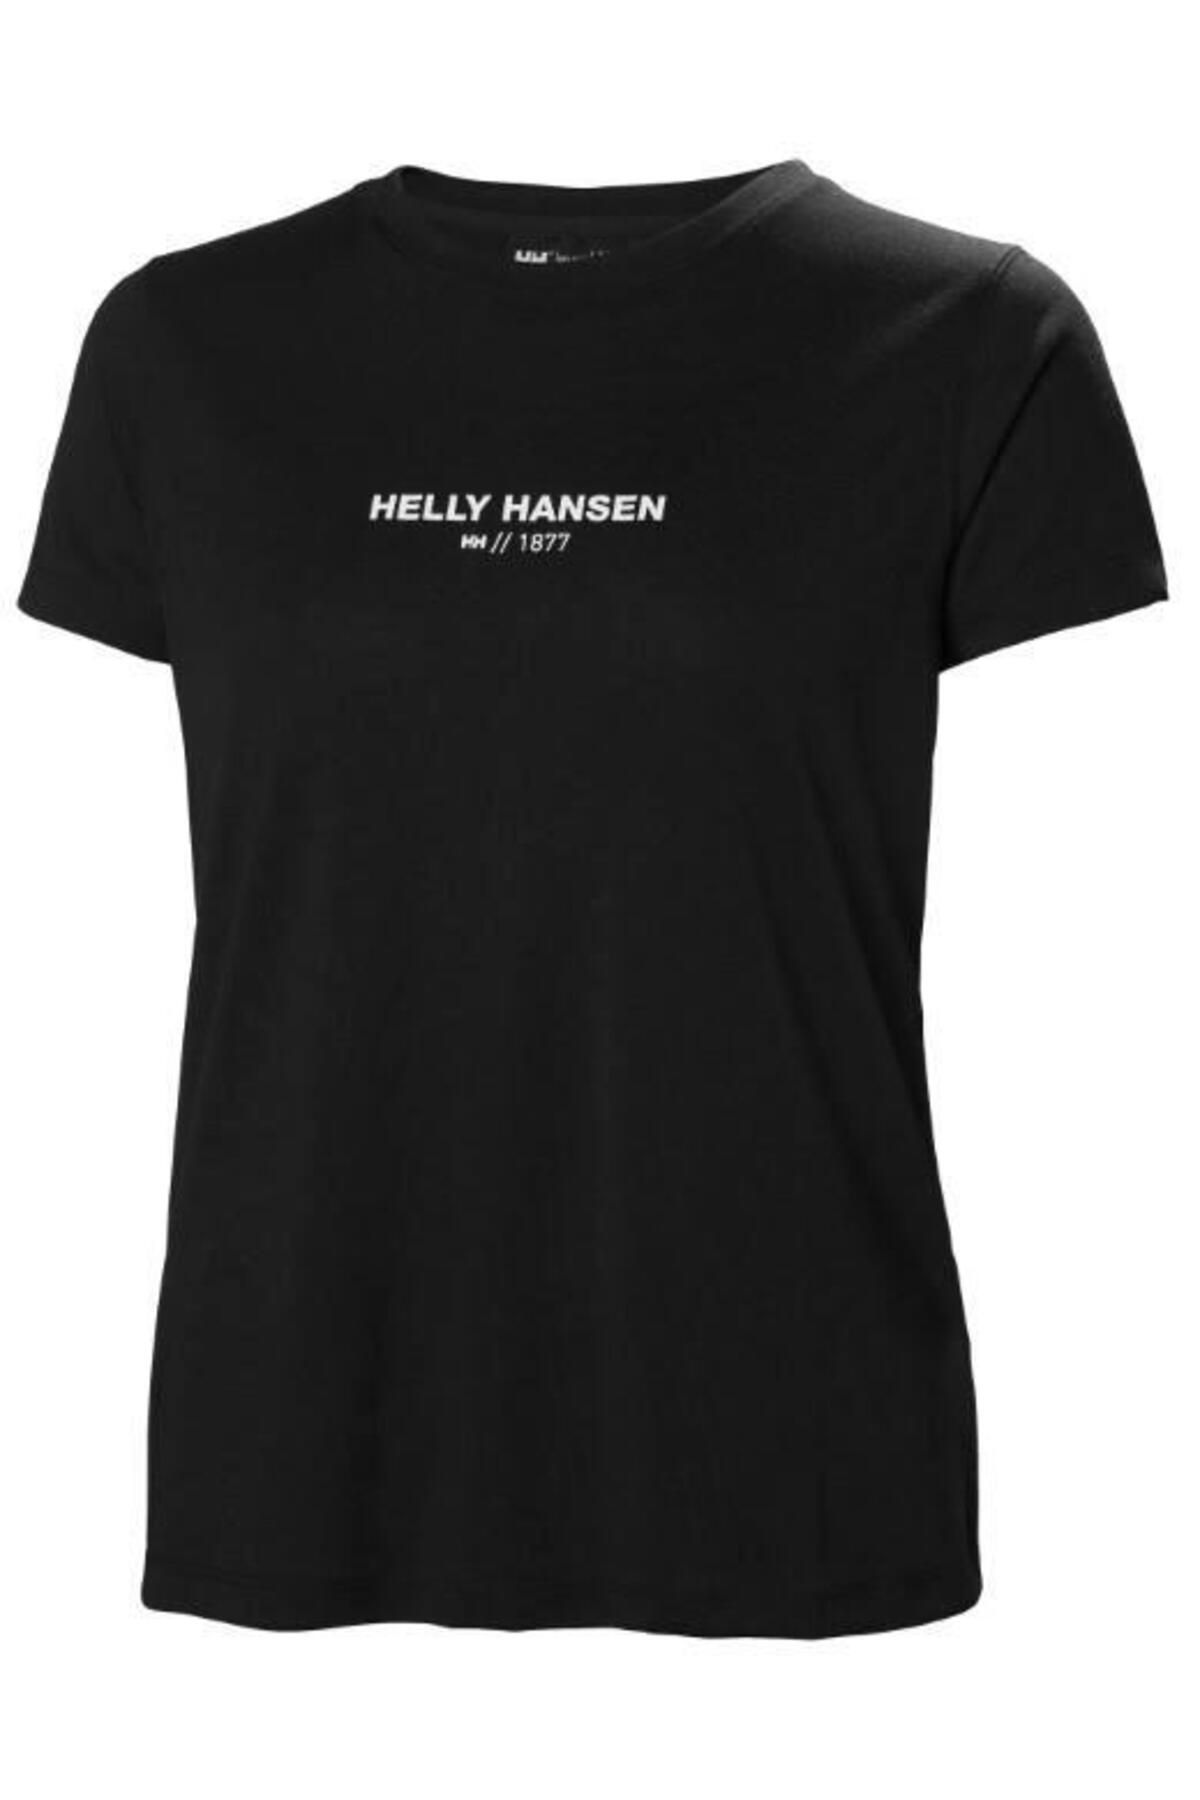 Helly Hansen W Allure T-shirt